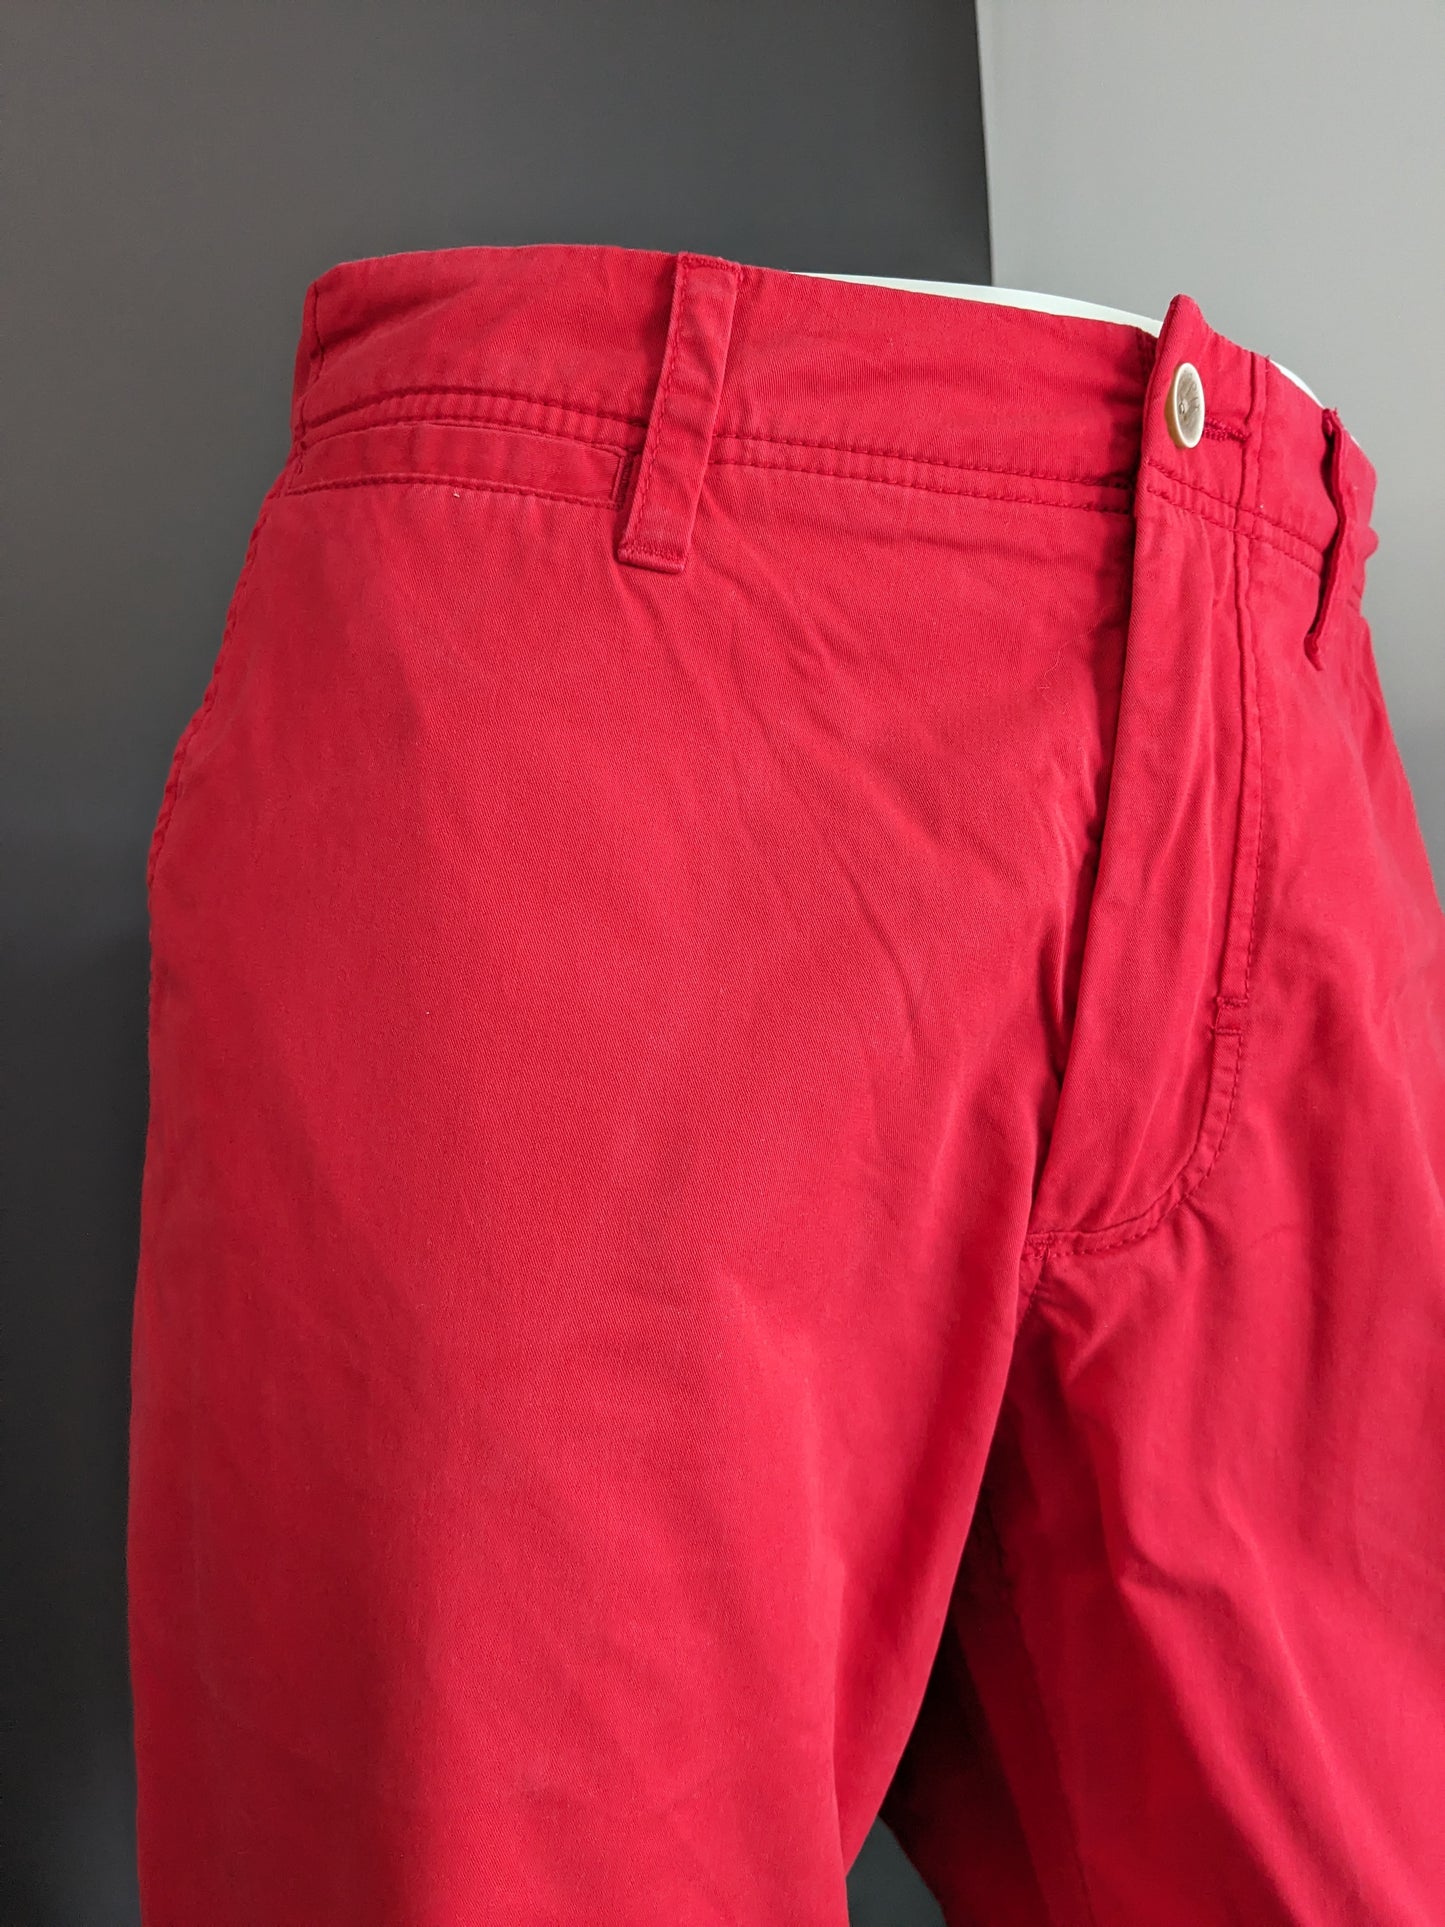 Esprit Chino Slim Fit broek. Rood gekleurd. Maat W38 - L34.